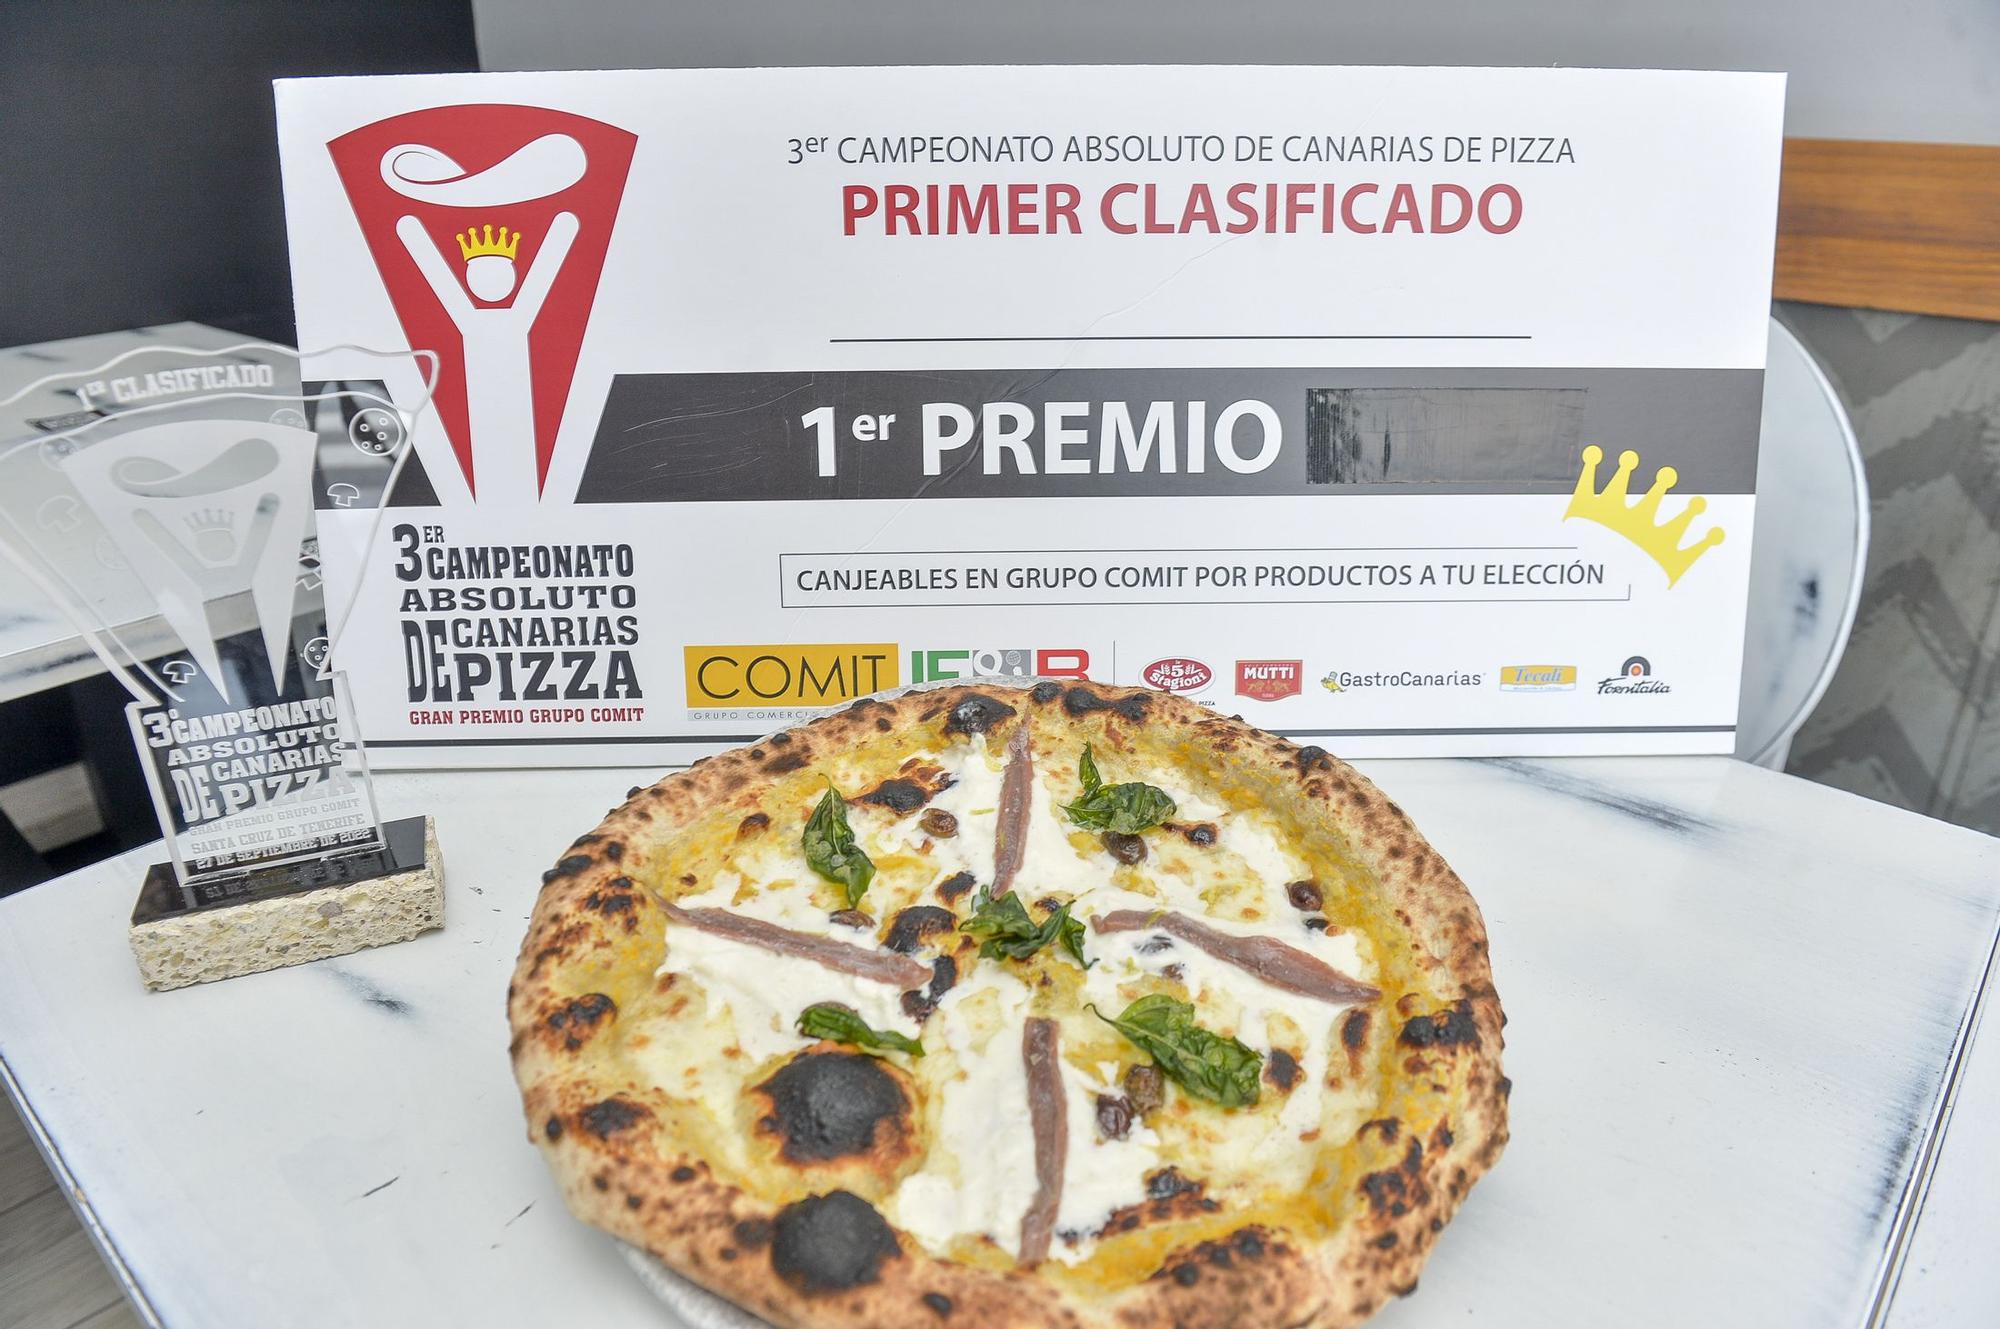 Pizzeria Pomodoro & Mozarella